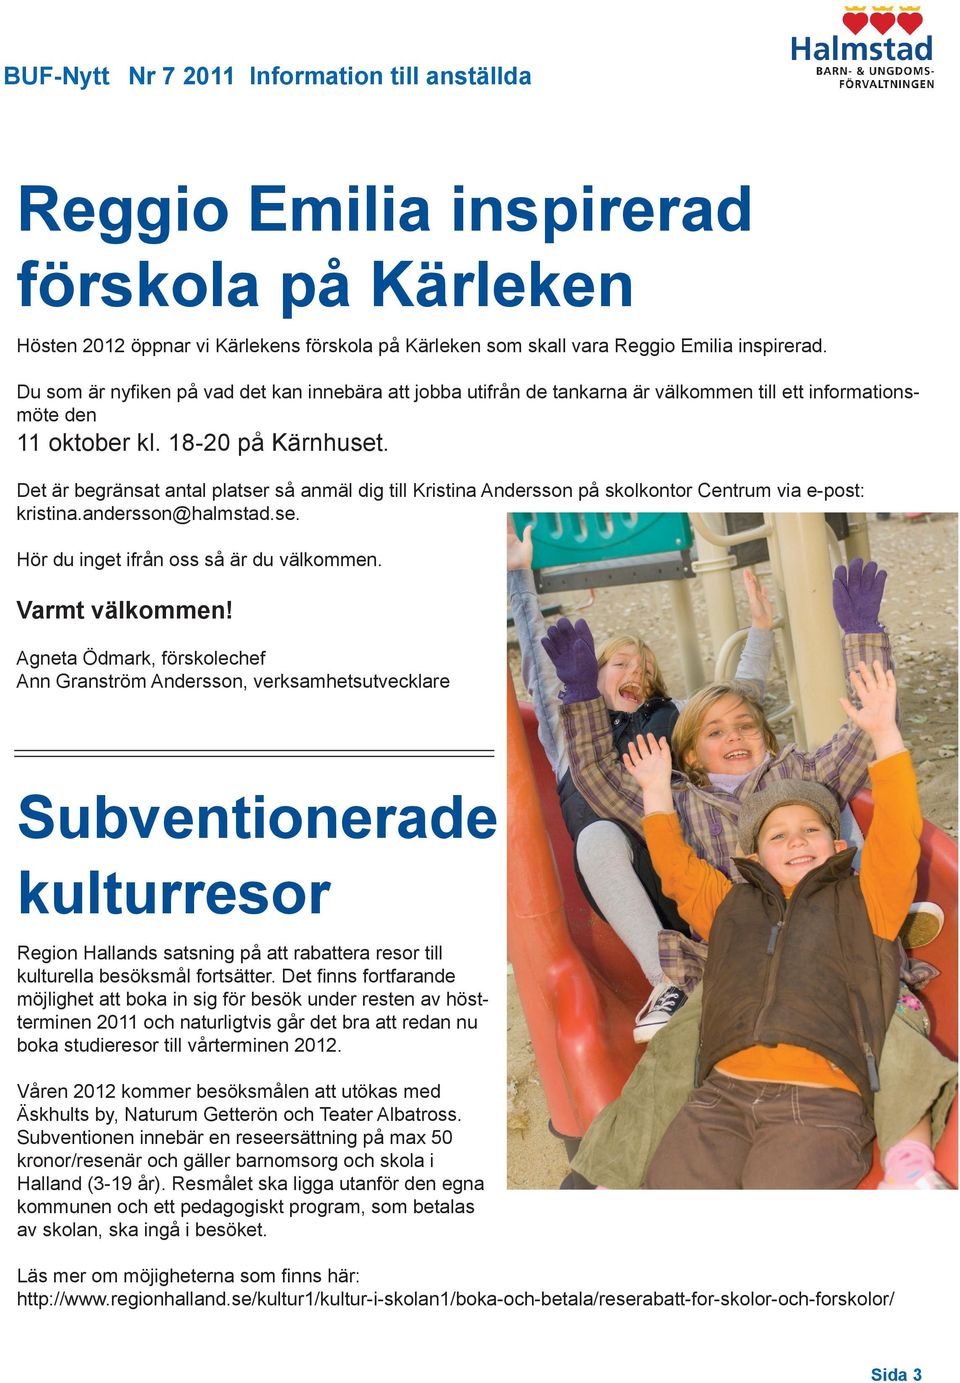 Det är begränsat antal platser så anmäl dig till Kristina Andersson på skolkontor Centrum via e-post: kristina.andersson@halmstad.se. Hör du inget ifrån oss så är du välkommen. Varmt välkommen!